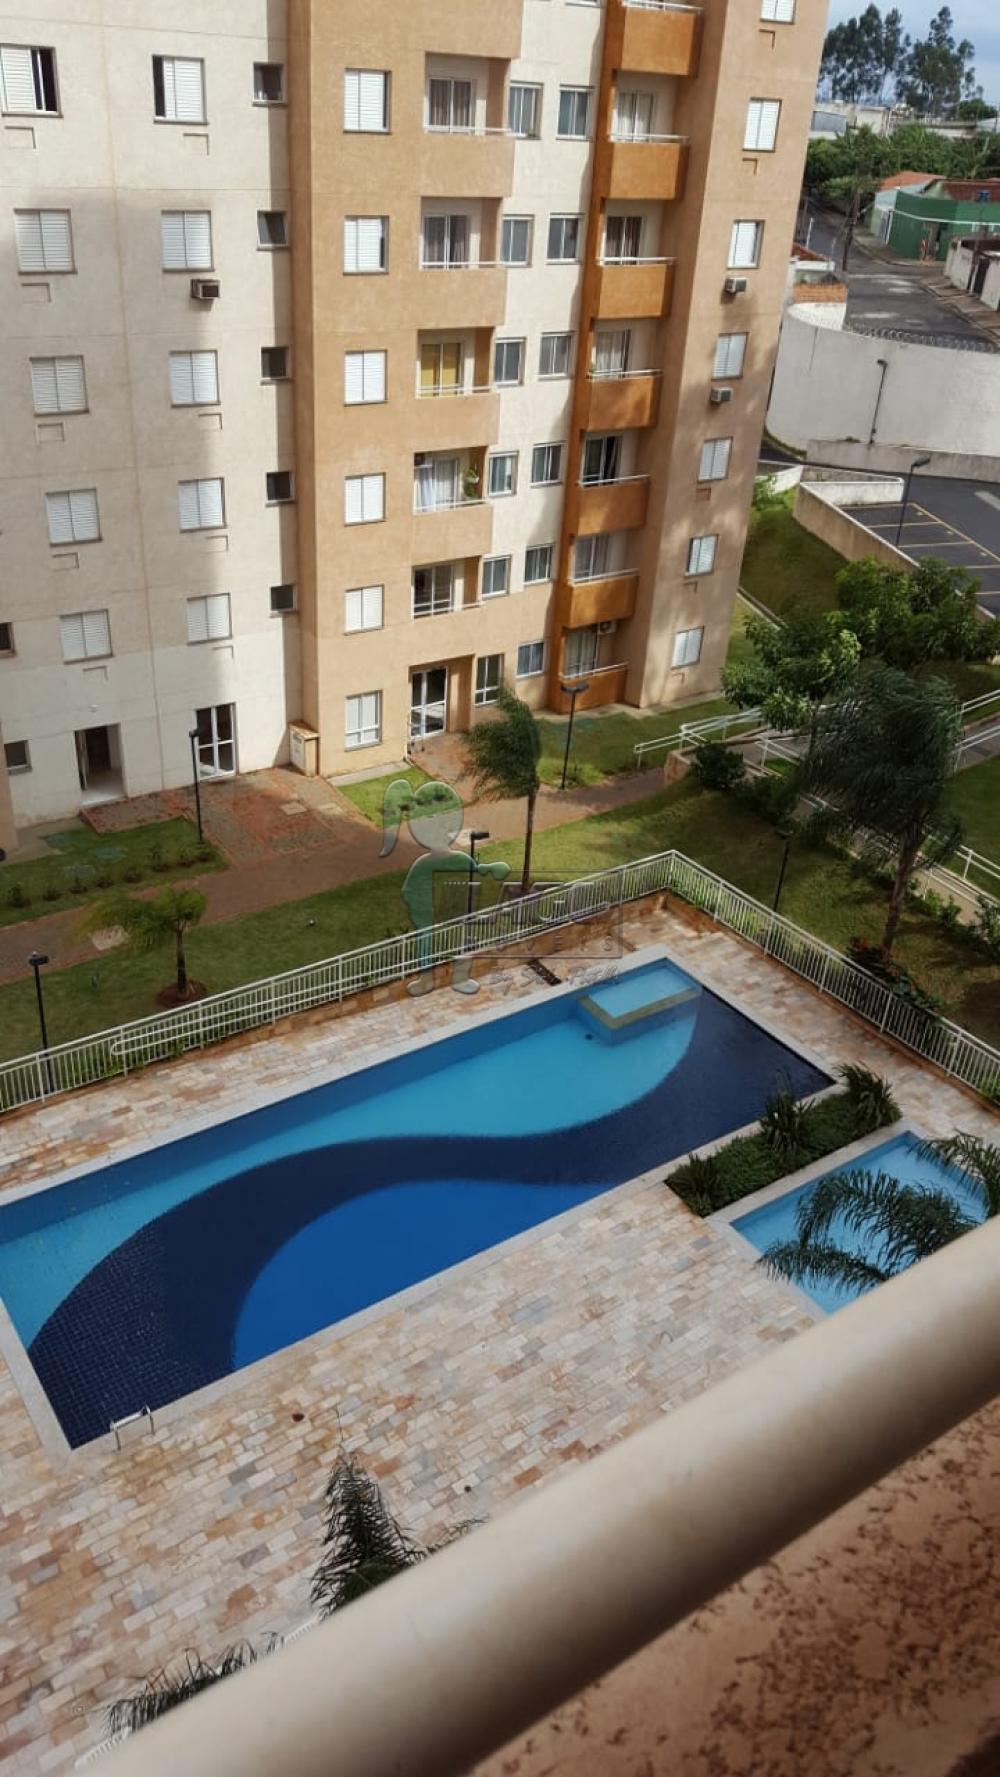 Comprar Apartamentos / Padrão em Ribeirão Preto R$ 195.000,00 - Foto 4